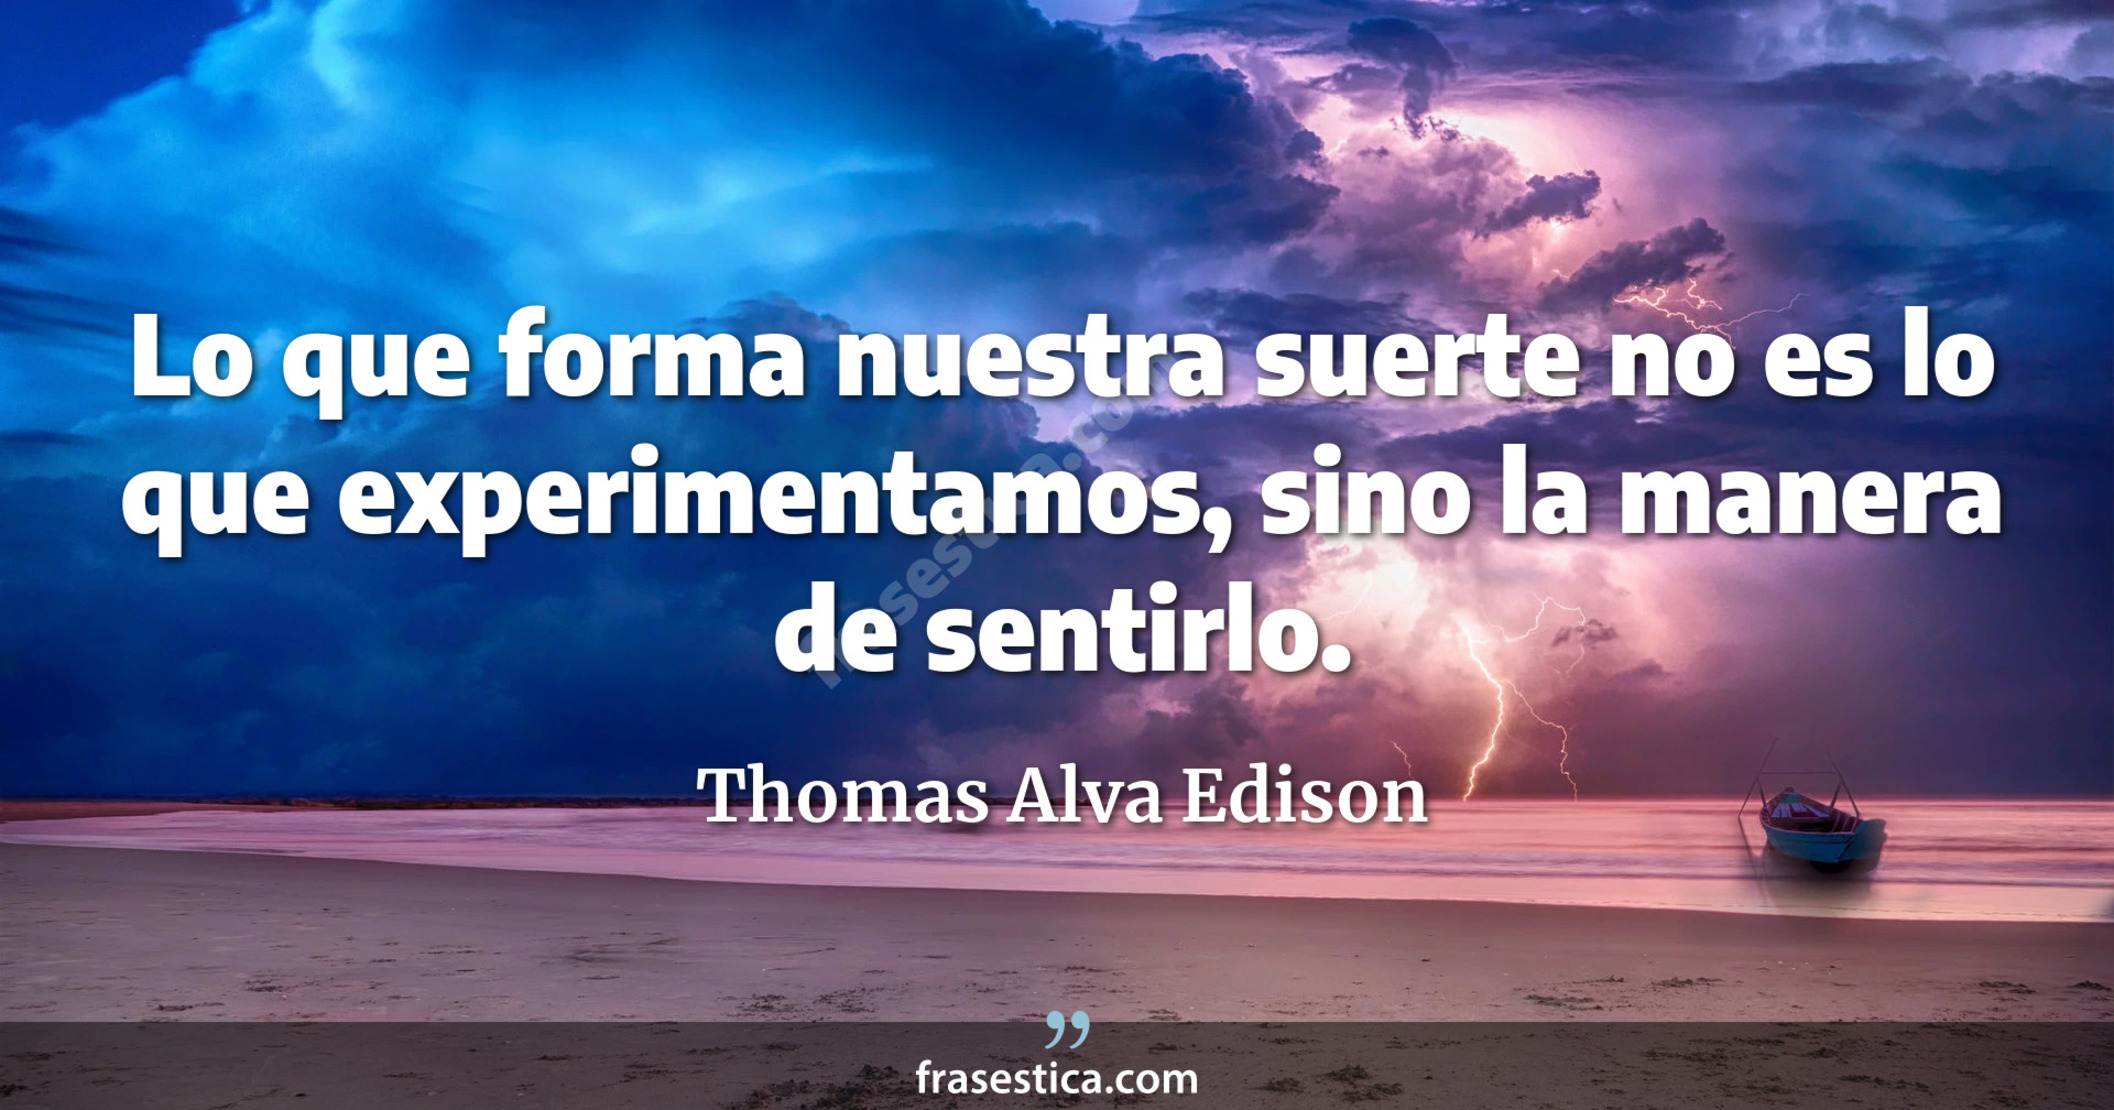 Lo que forma nuestra suerte no es lo que experimentamos, sino la manera de sentirlo. - Thomas Alva Edison